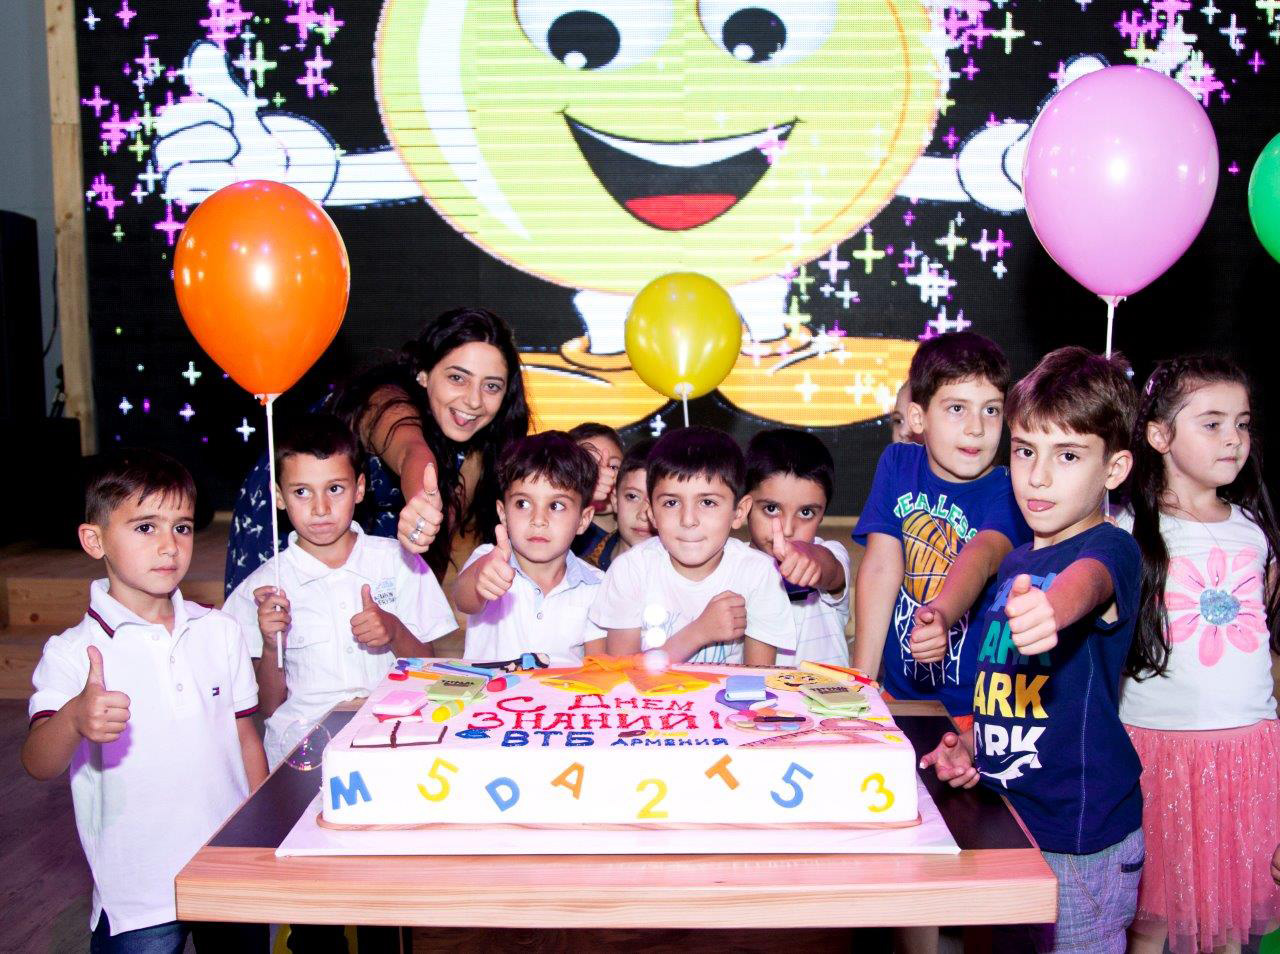 Банк ВТБ (Армения) организовал праздник для первоклассников